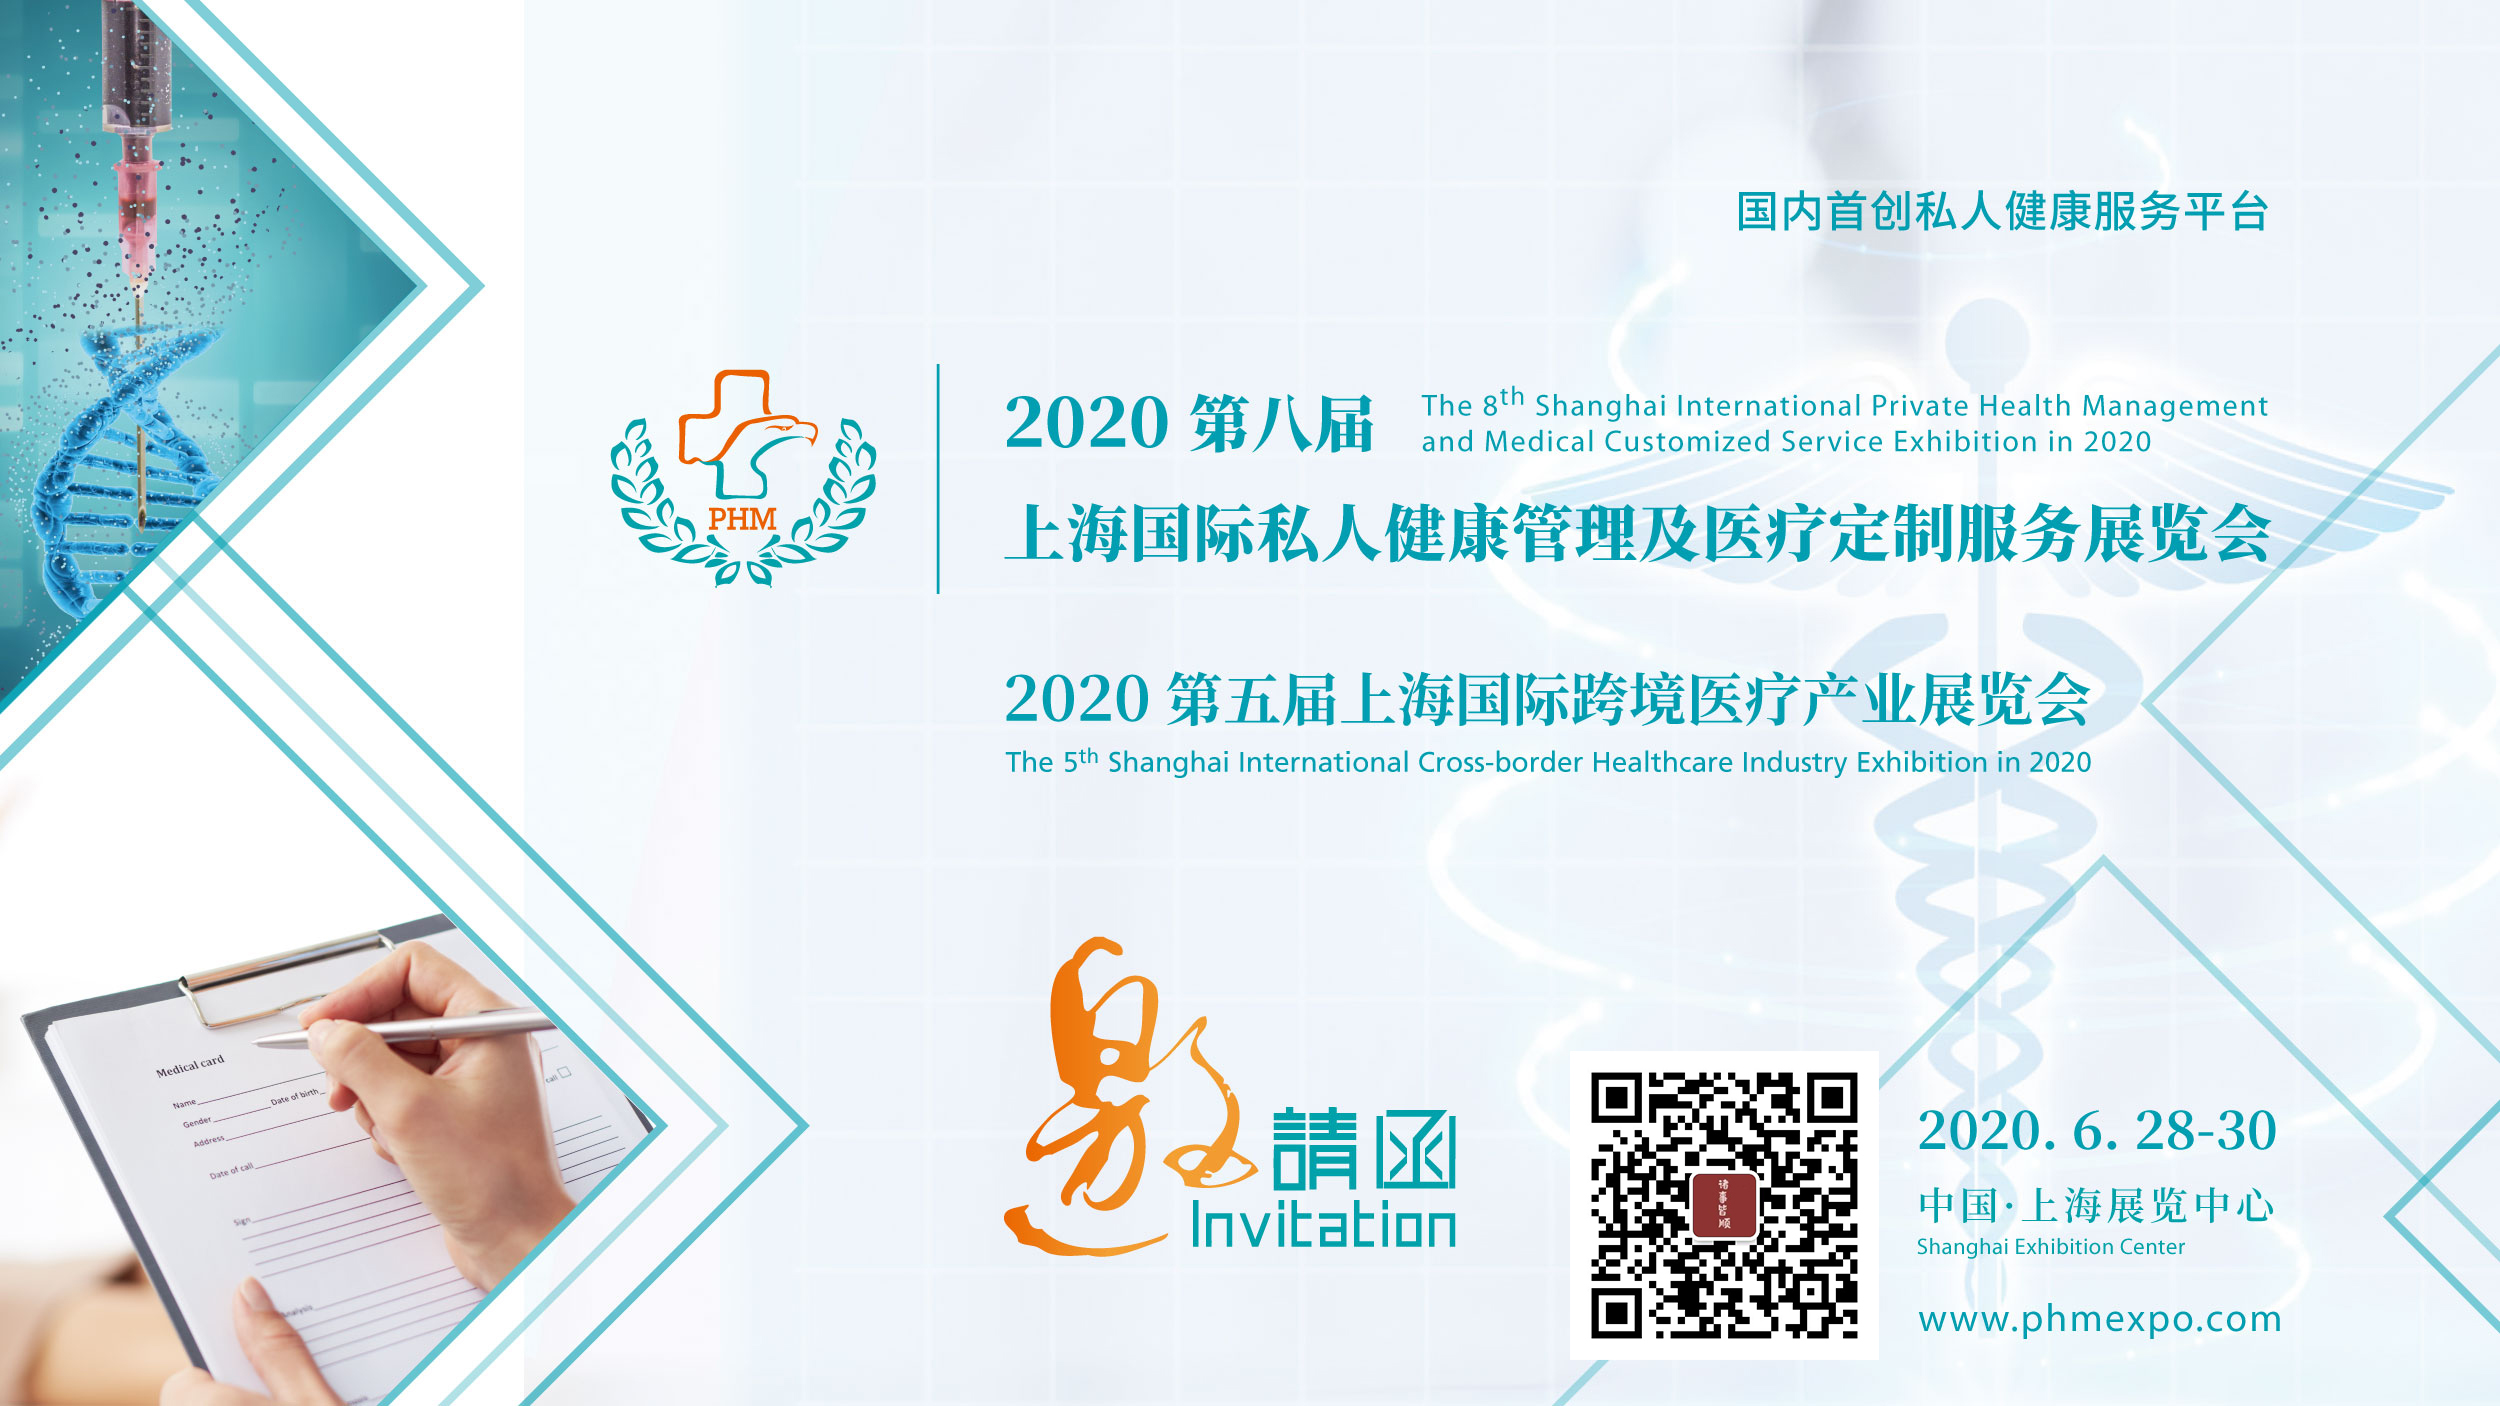 第八届上海国际私人健康管理及医疗定制服务展览将于6月28-30日在上海举行